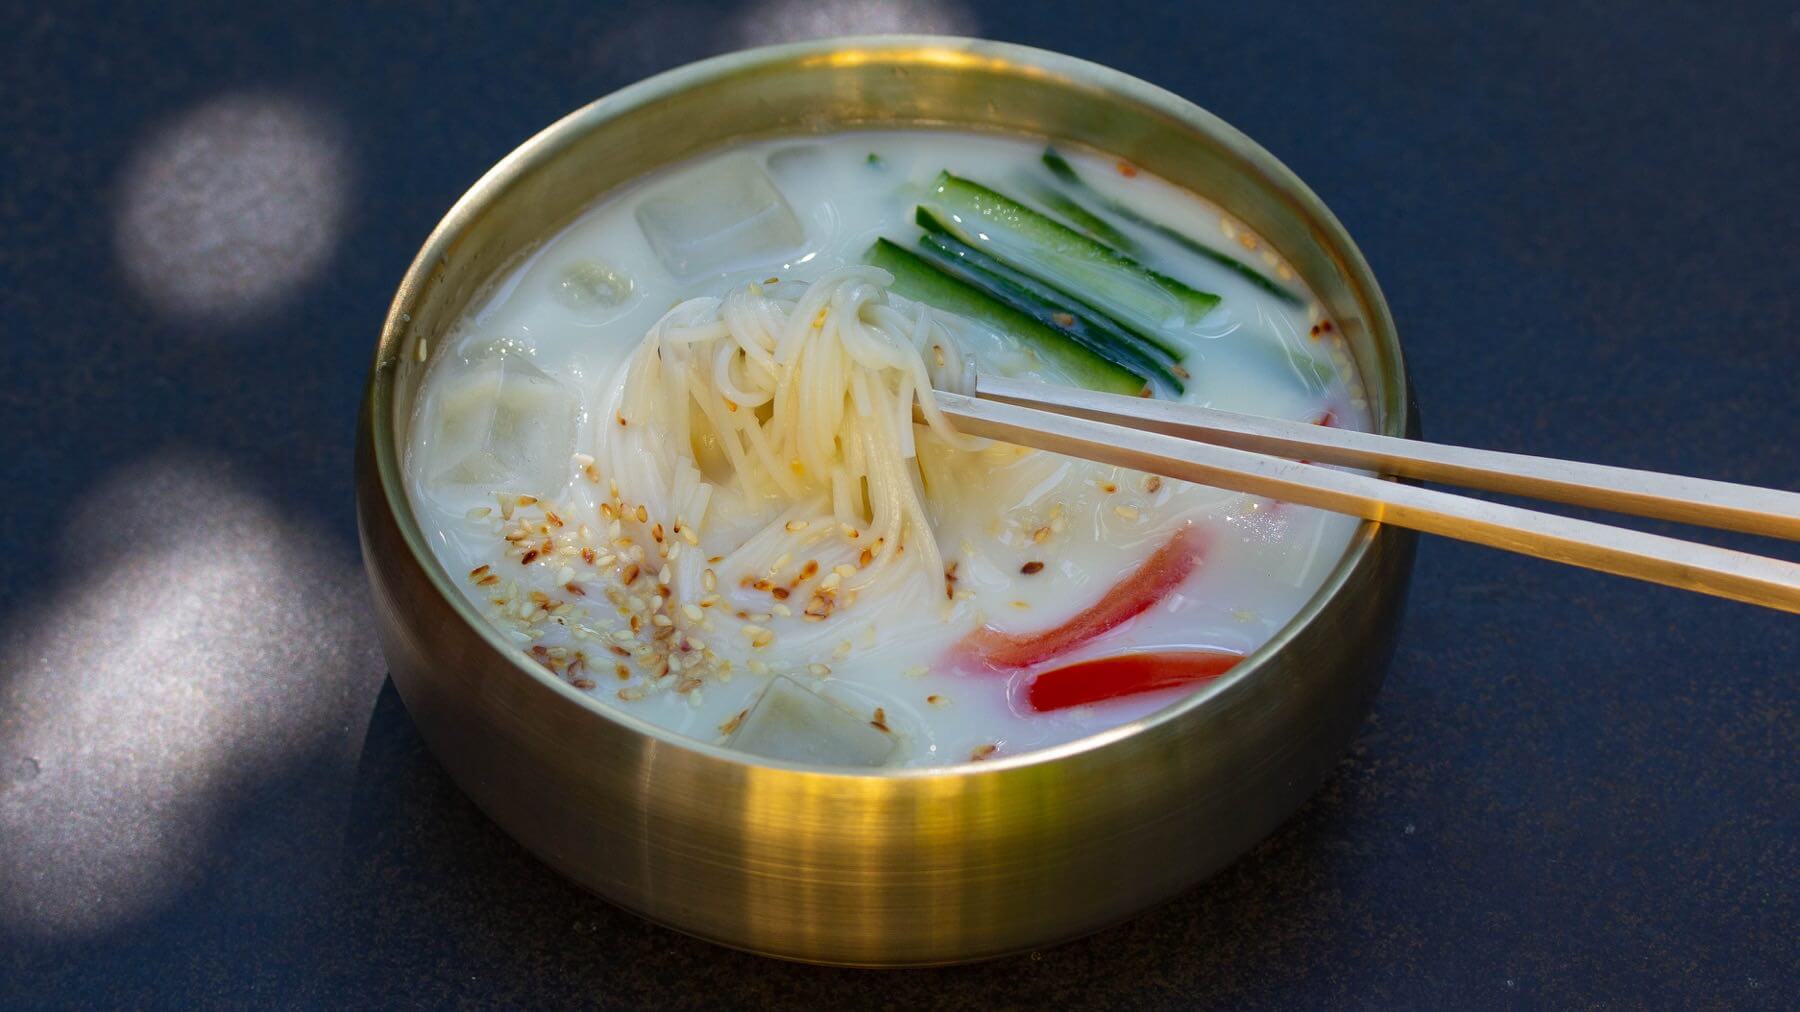 Erfrischende Sojamilch-Suppe aus Korea - Kong-Guksu